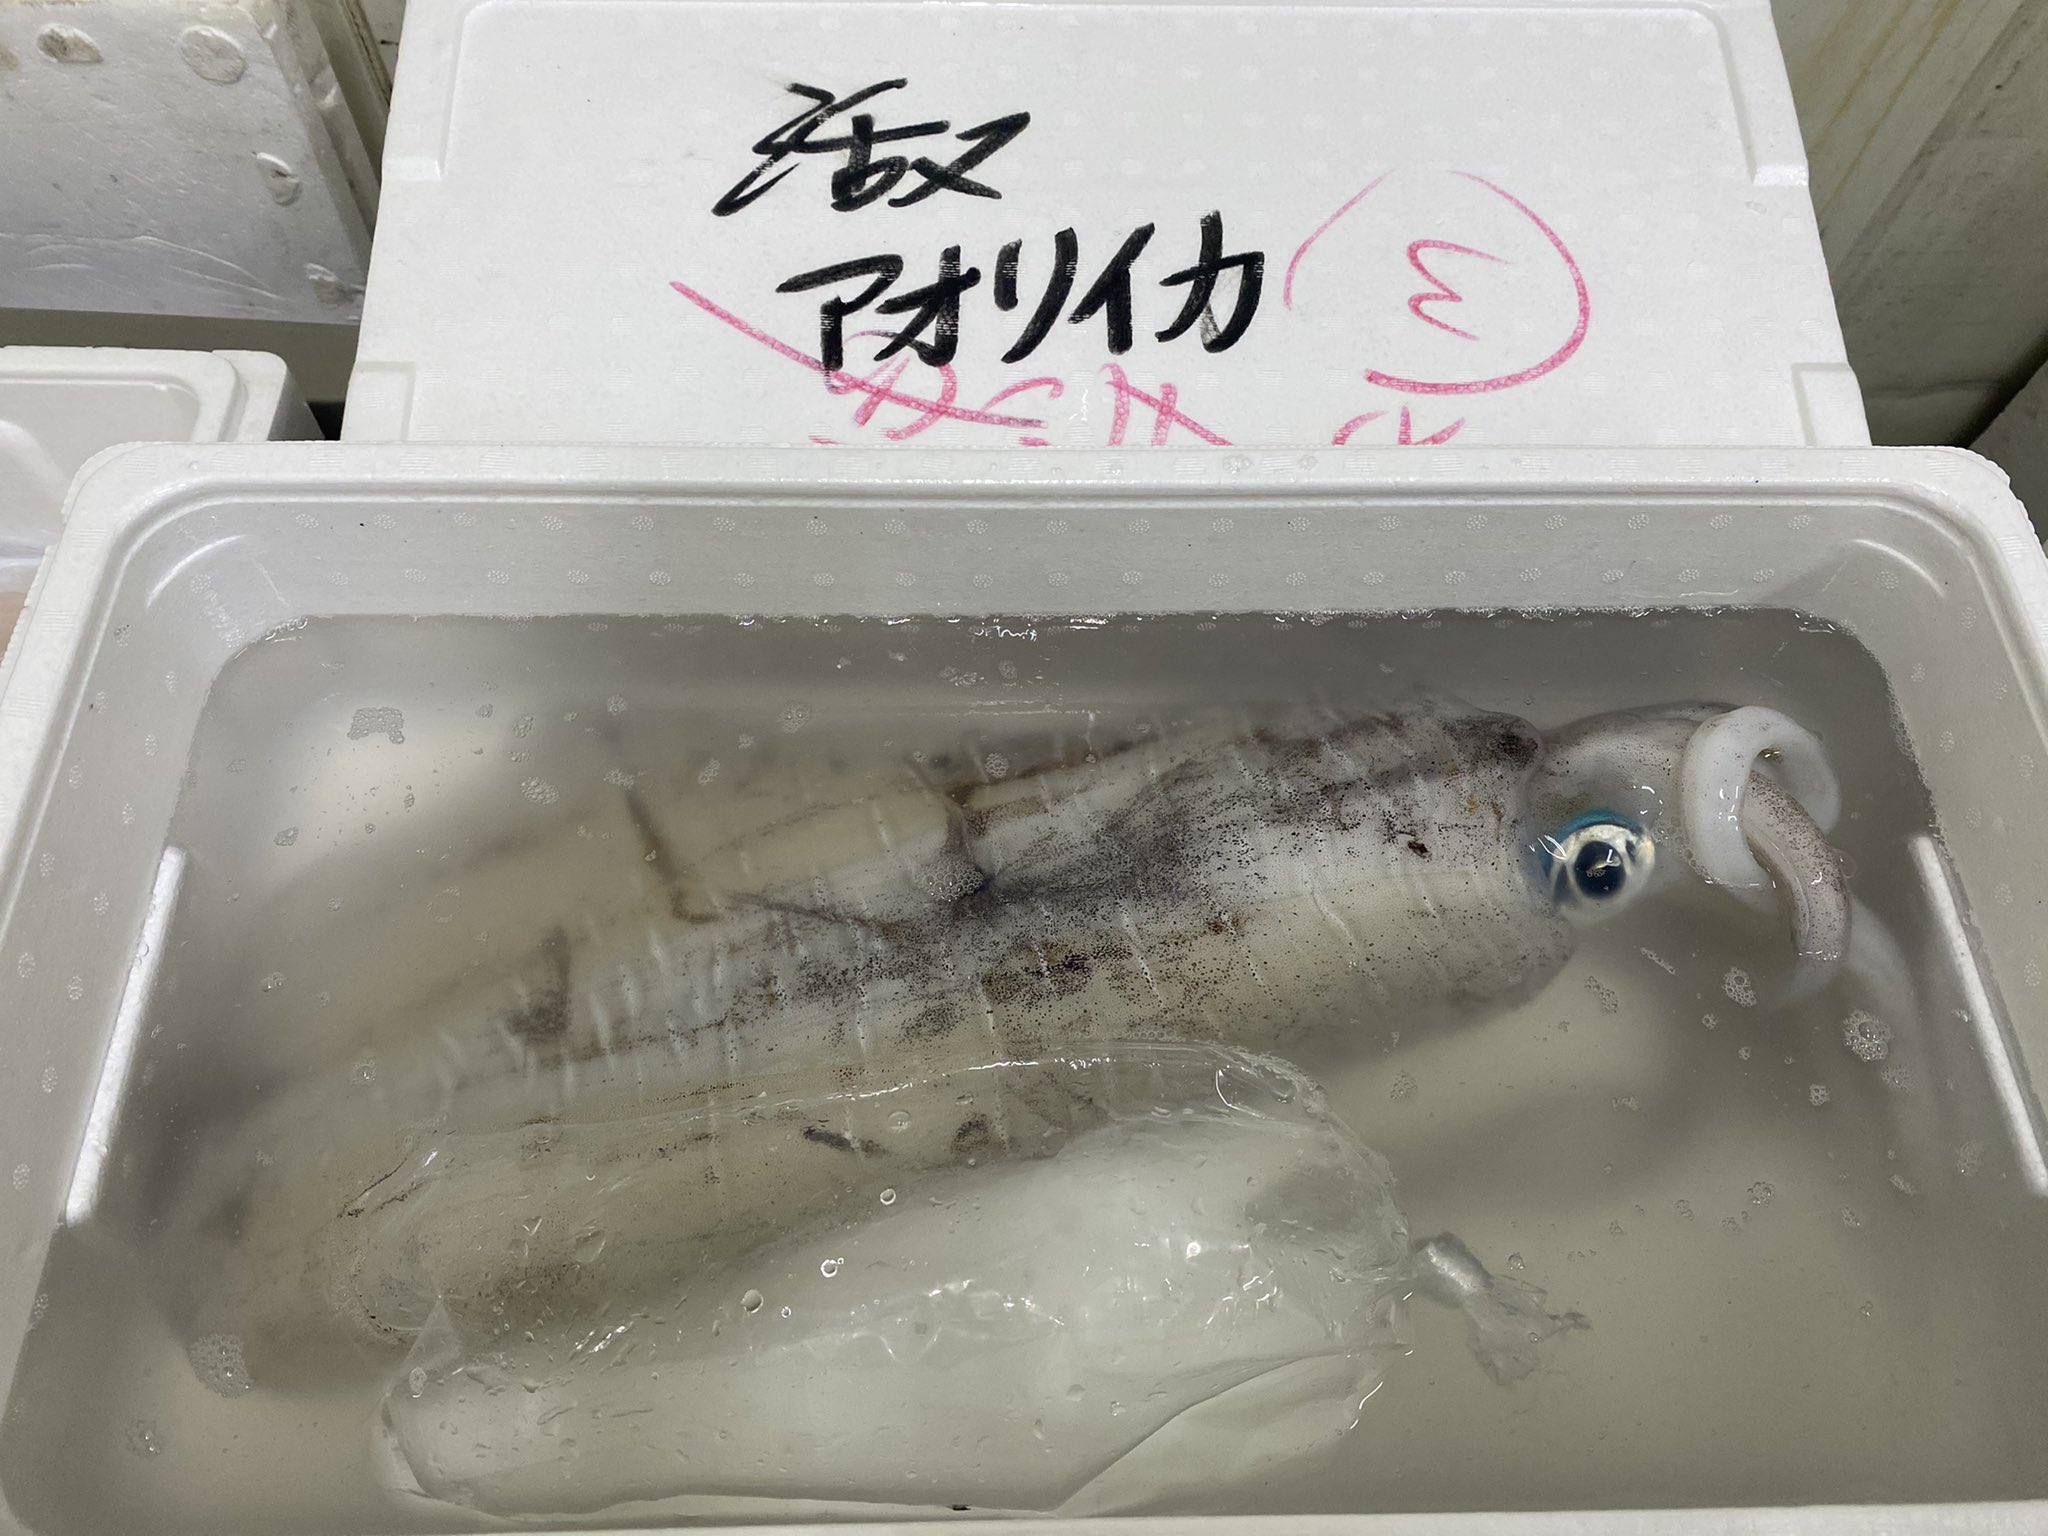 キタニ水産 イカの王様アオリイカと白イカ スミイカ スルメ ヤリイカ 赤イカ いろいろありますが 白イカが1番うまいと思うんだよな 意見 マジで違います T Co Ucubu9zoec Twitter